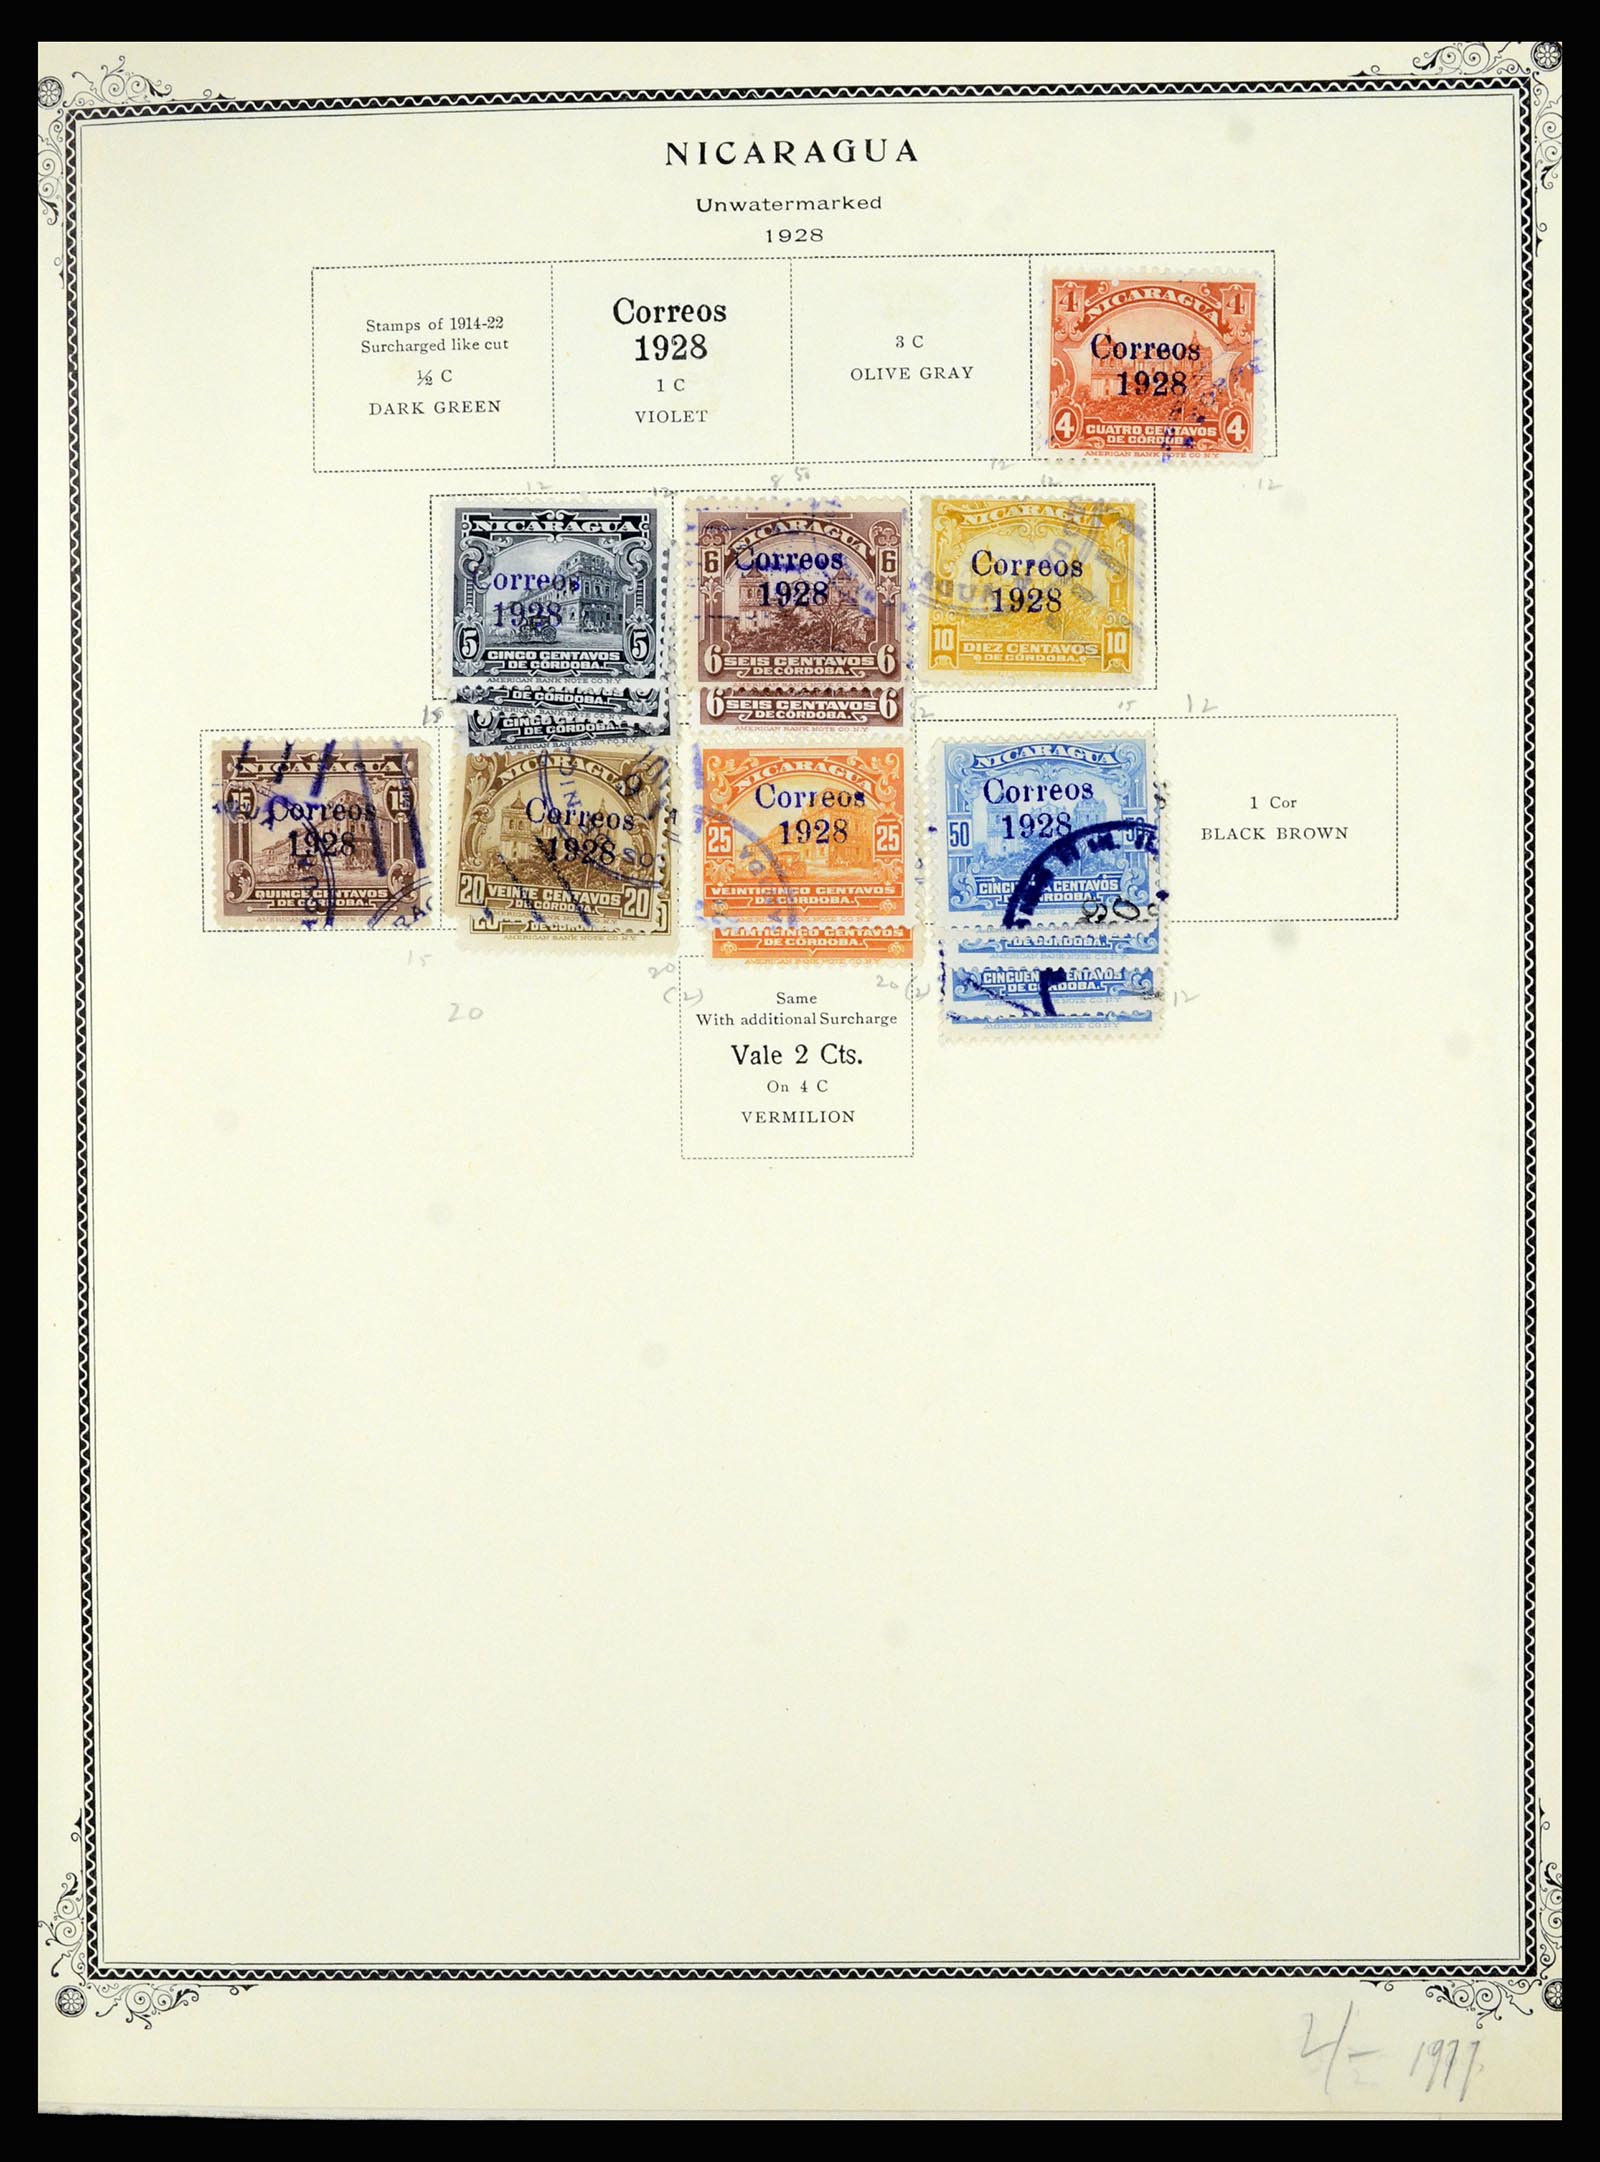 36494 087 - Stamp collection 36494 Nicaragua 1902-1945.